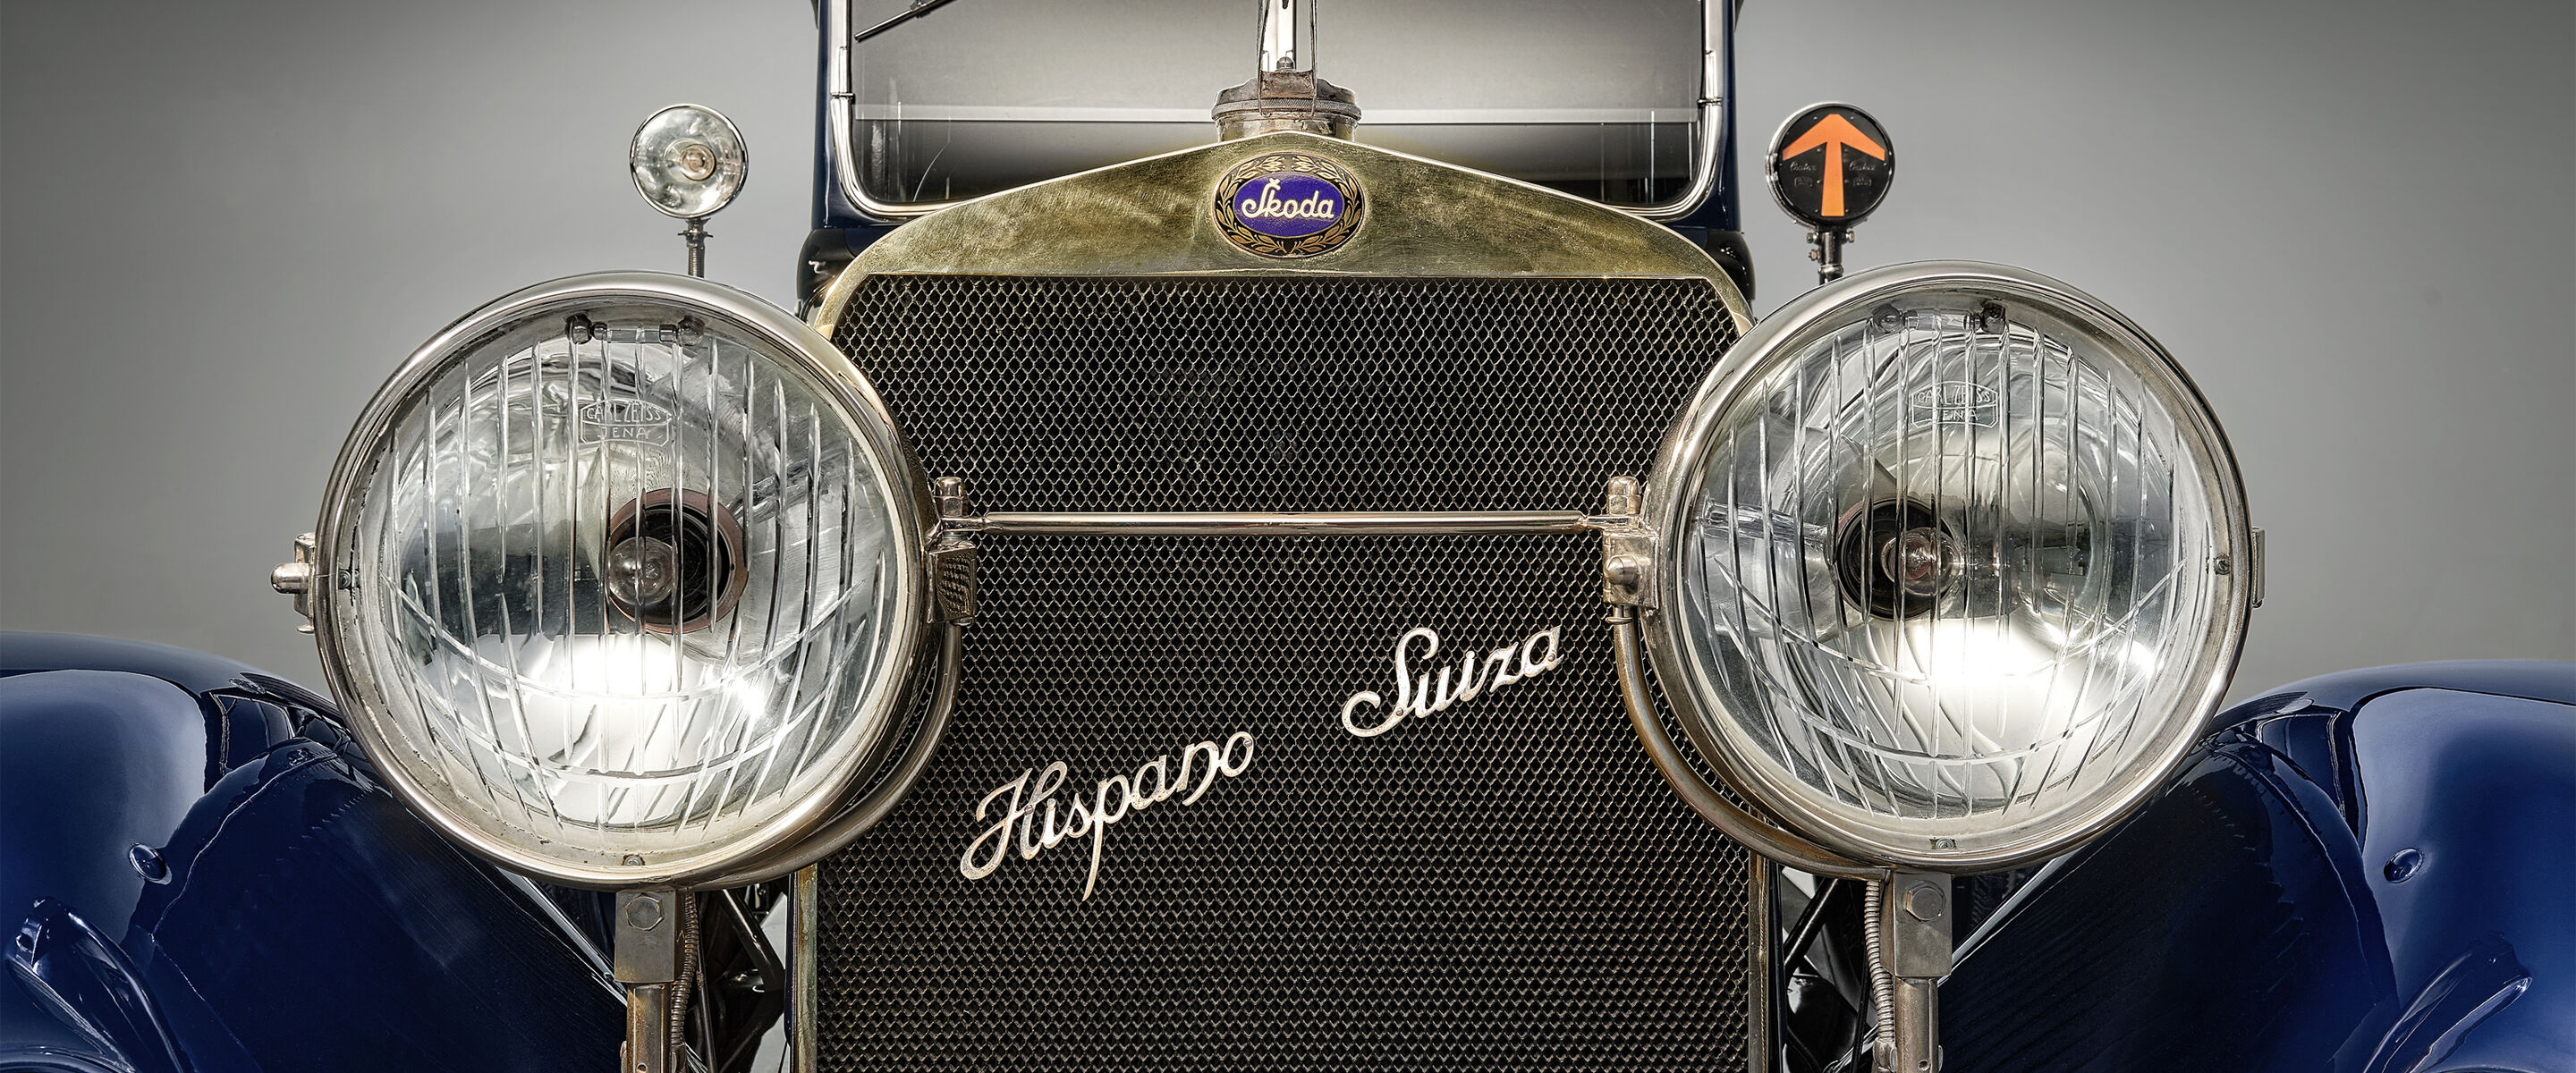 De klassieke Škoda Hispano-Suiza: een bijzonder stukje geschiedenis